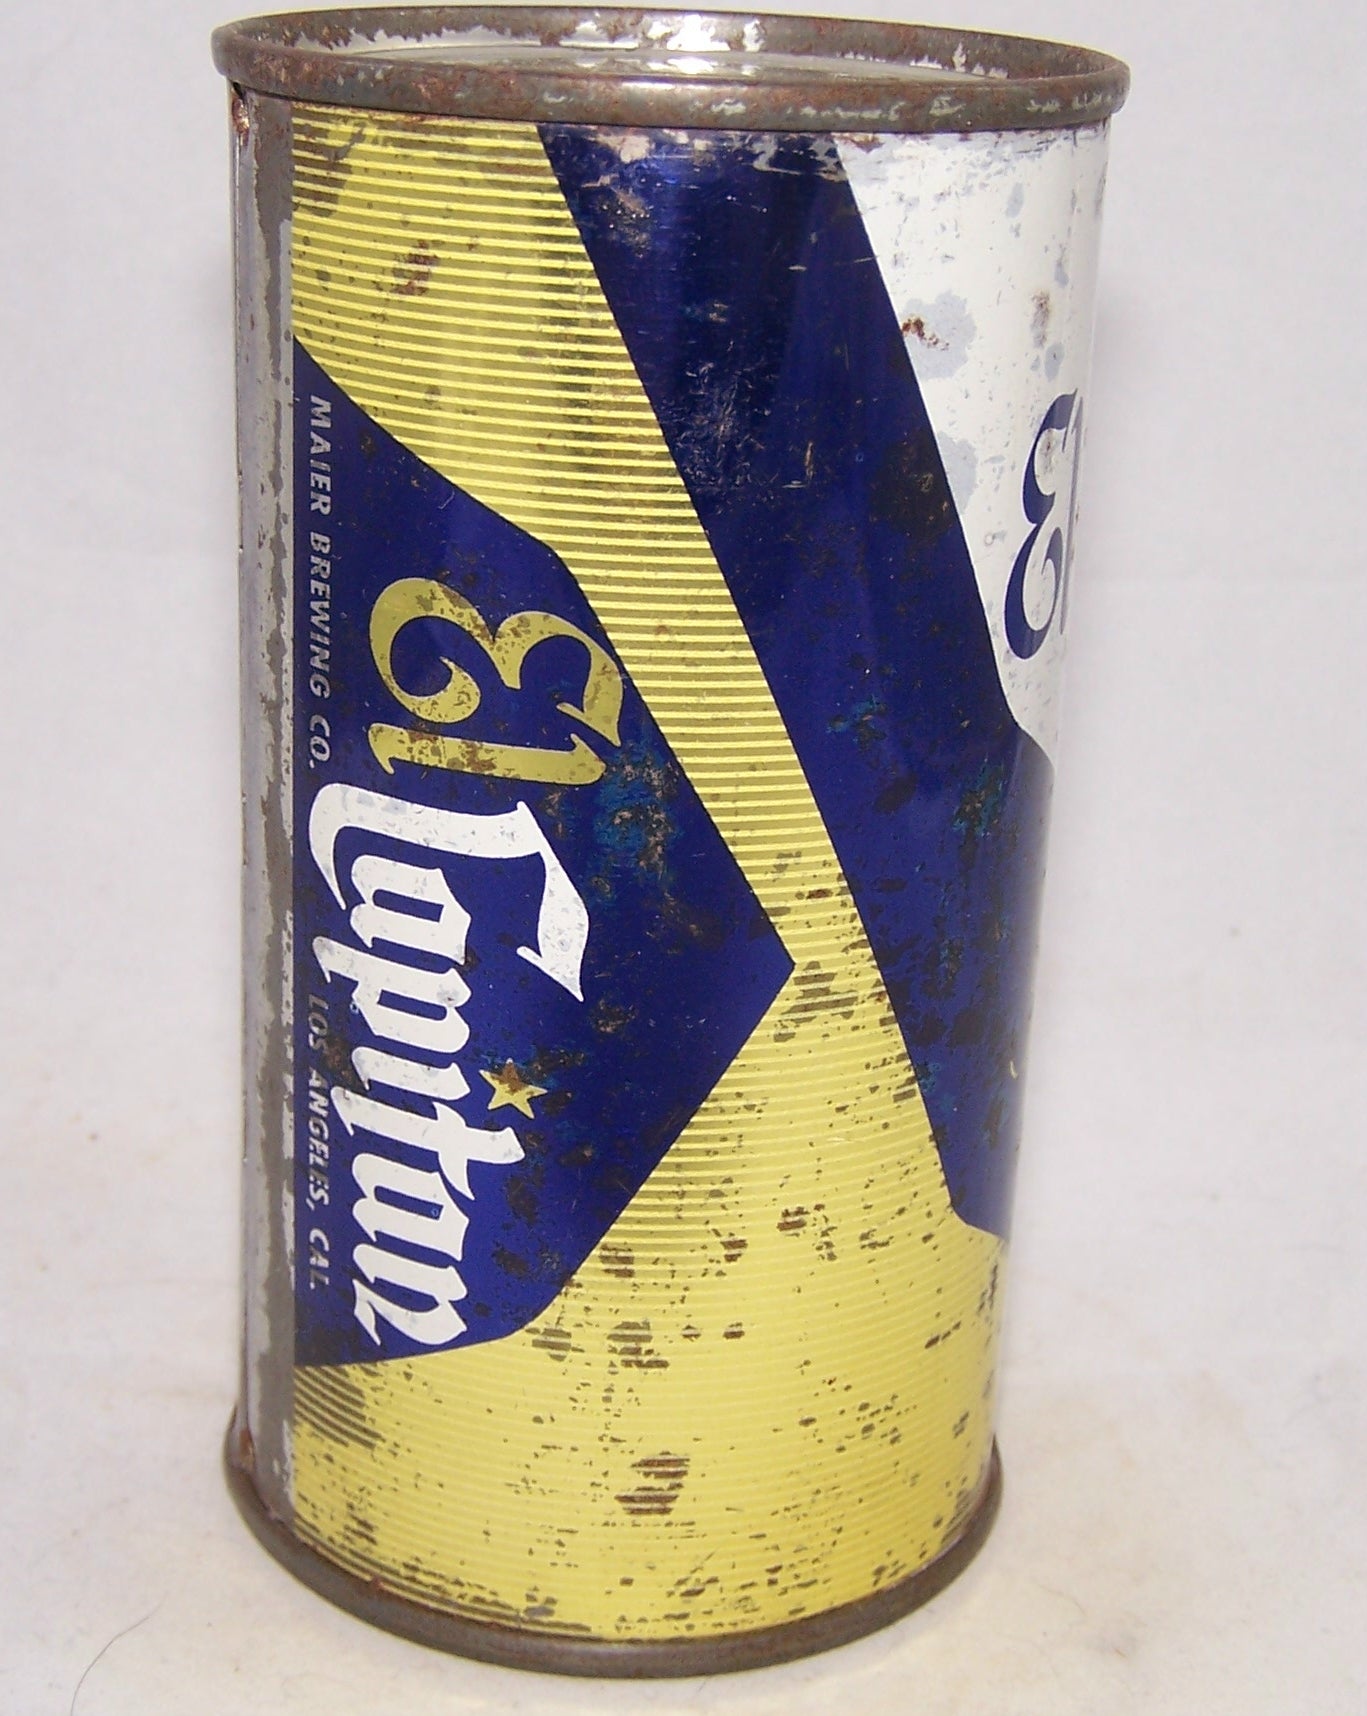 El Capitan Premium Beer (Maier) USBC 59-18, Grade 1-/2+ Sold on 2/12/18